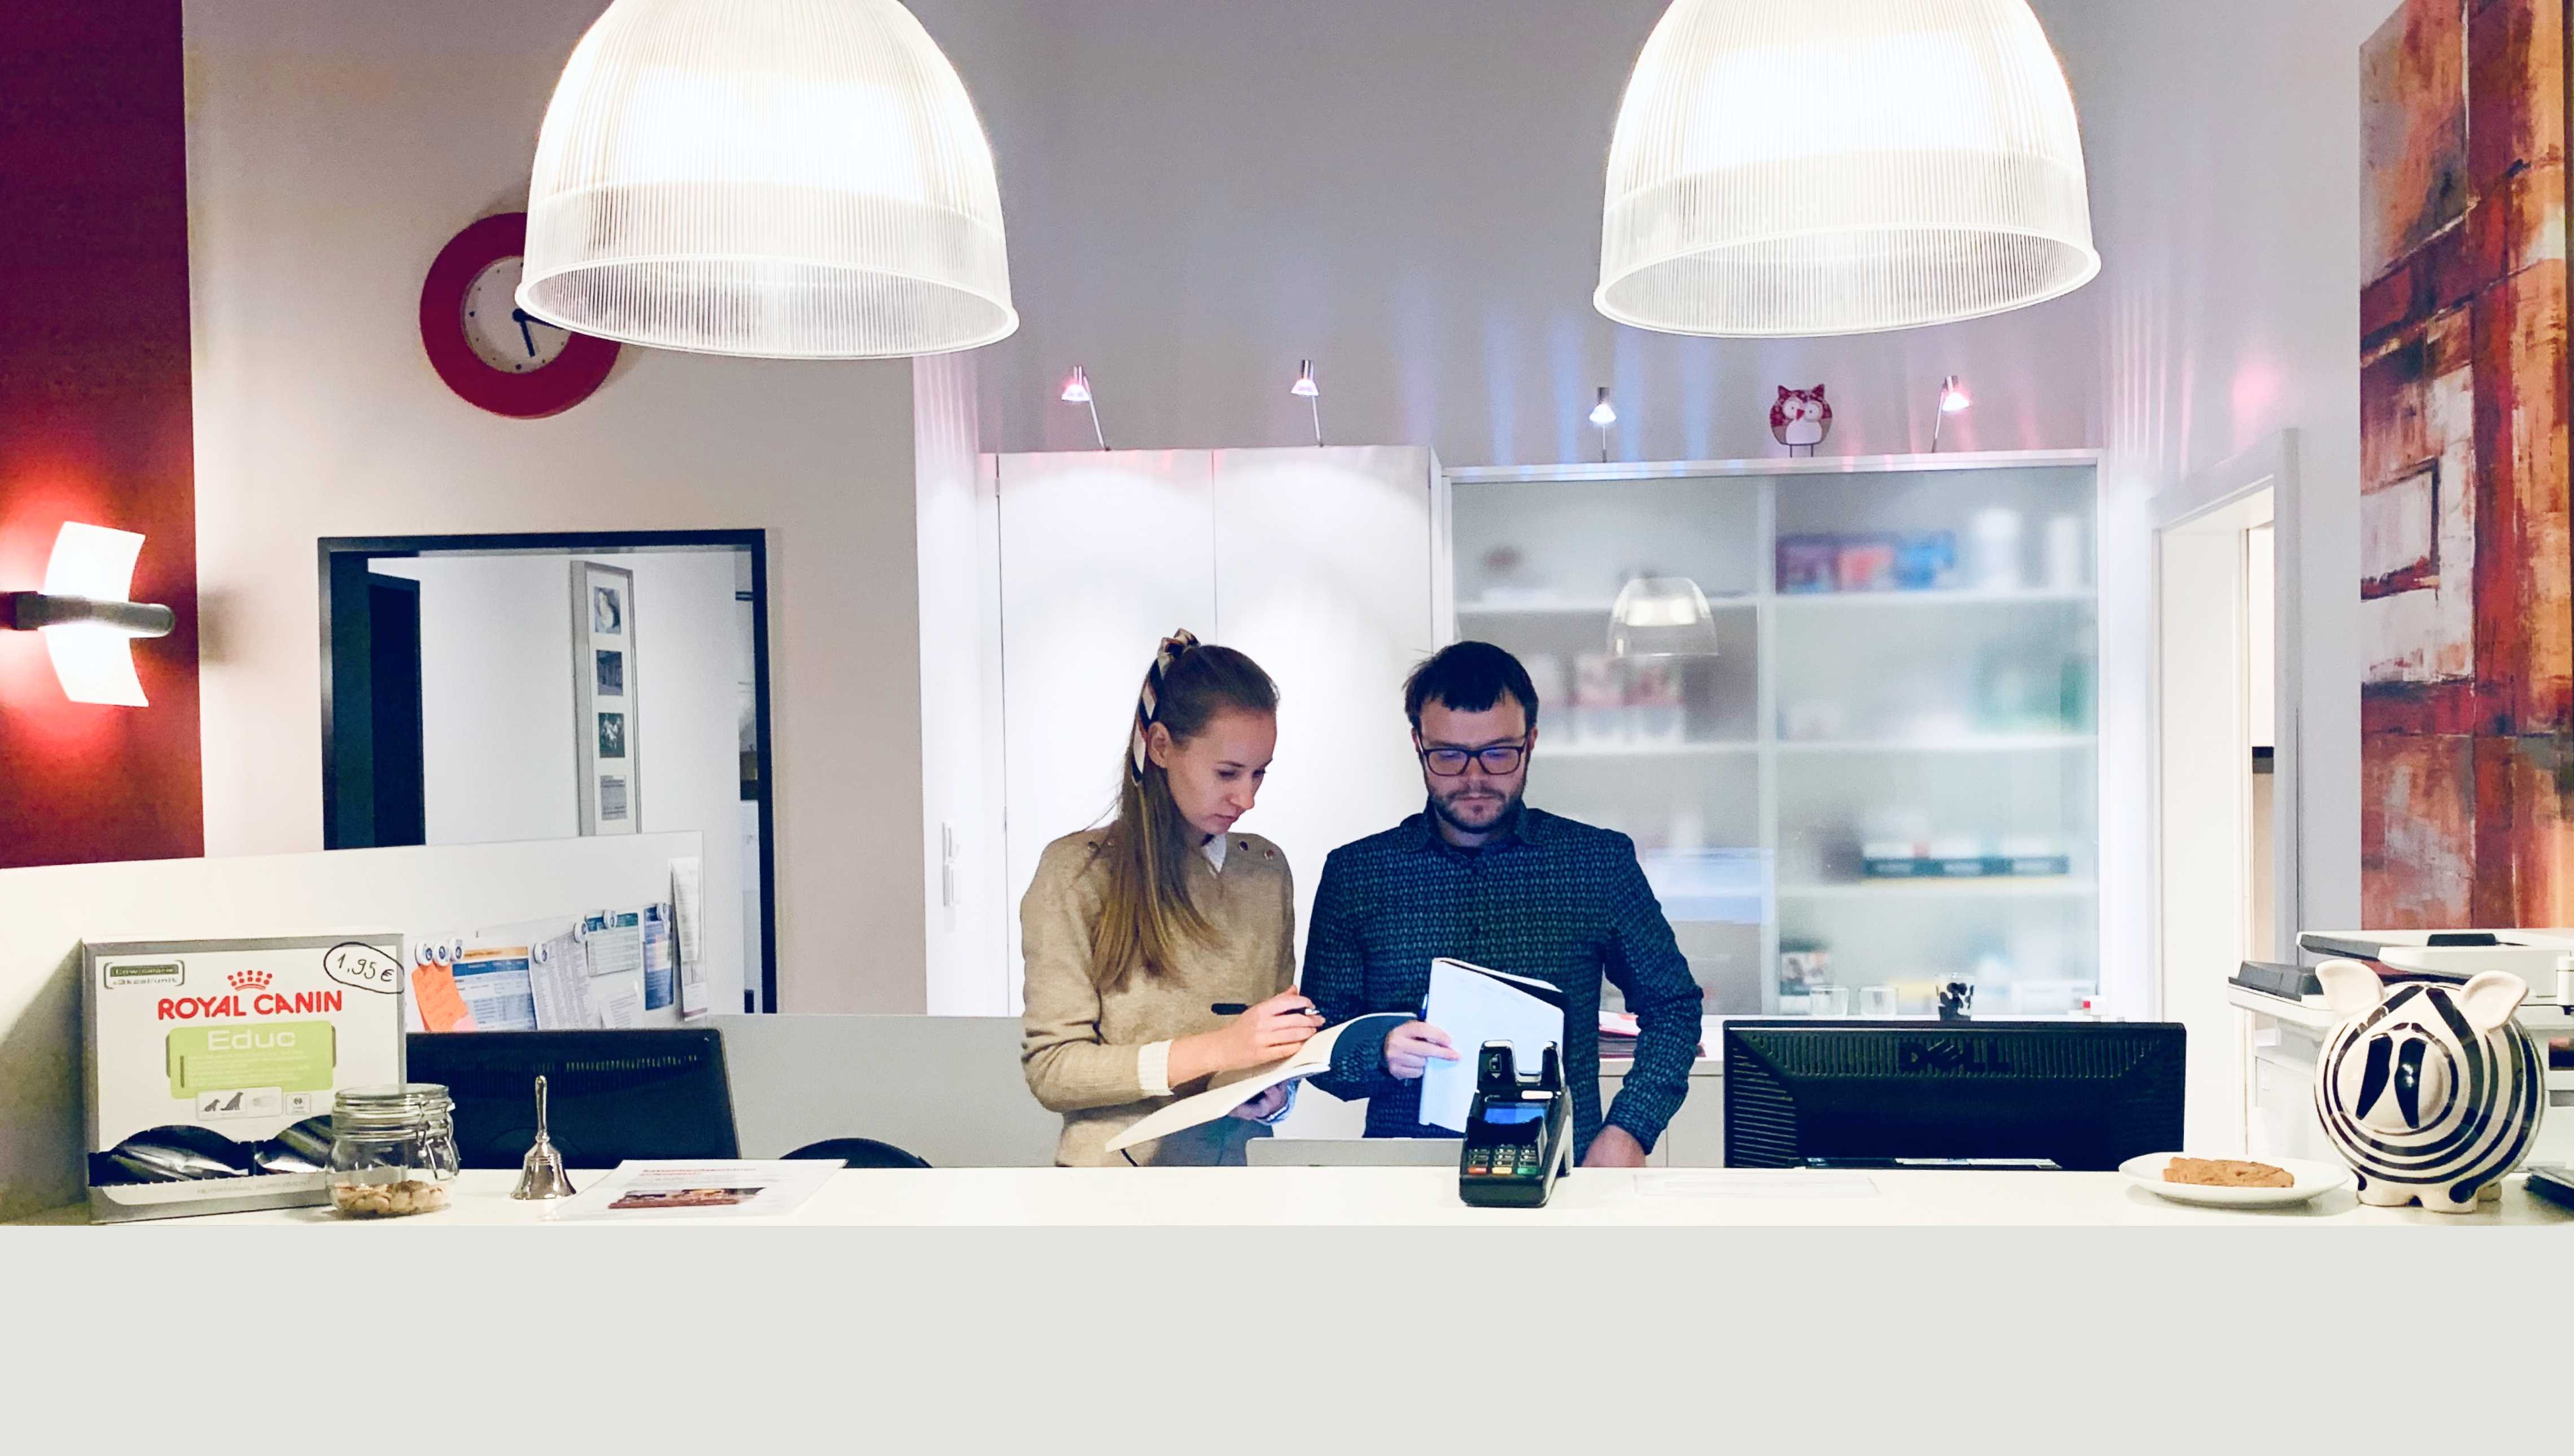 Mann og kvinne i resepsjonen på en norsk klinikk under en brukerundersøkelse